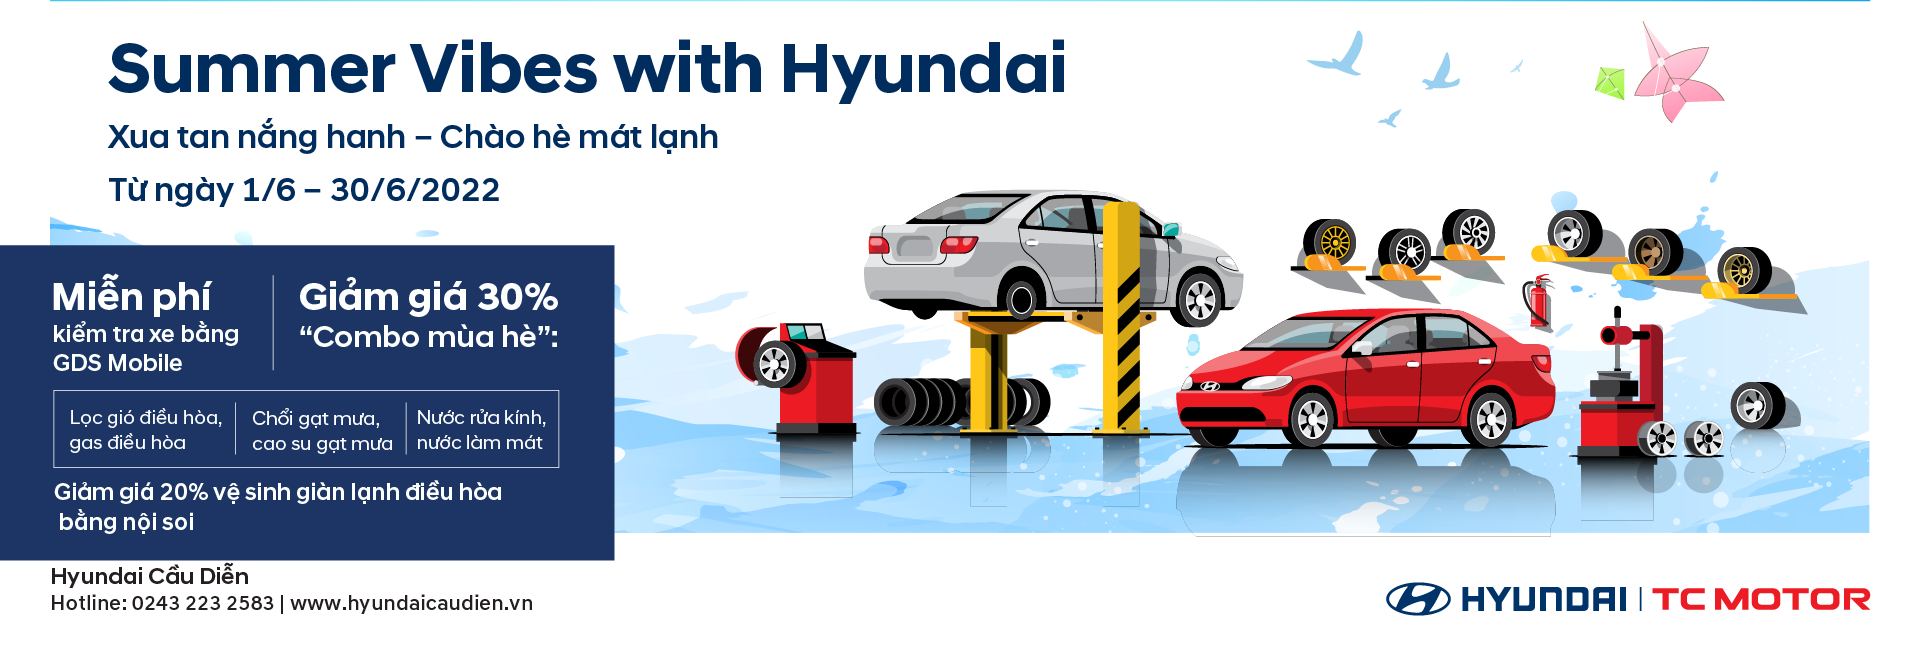 Chào đón mùa hè cùng Hyundai Cầu Diễn